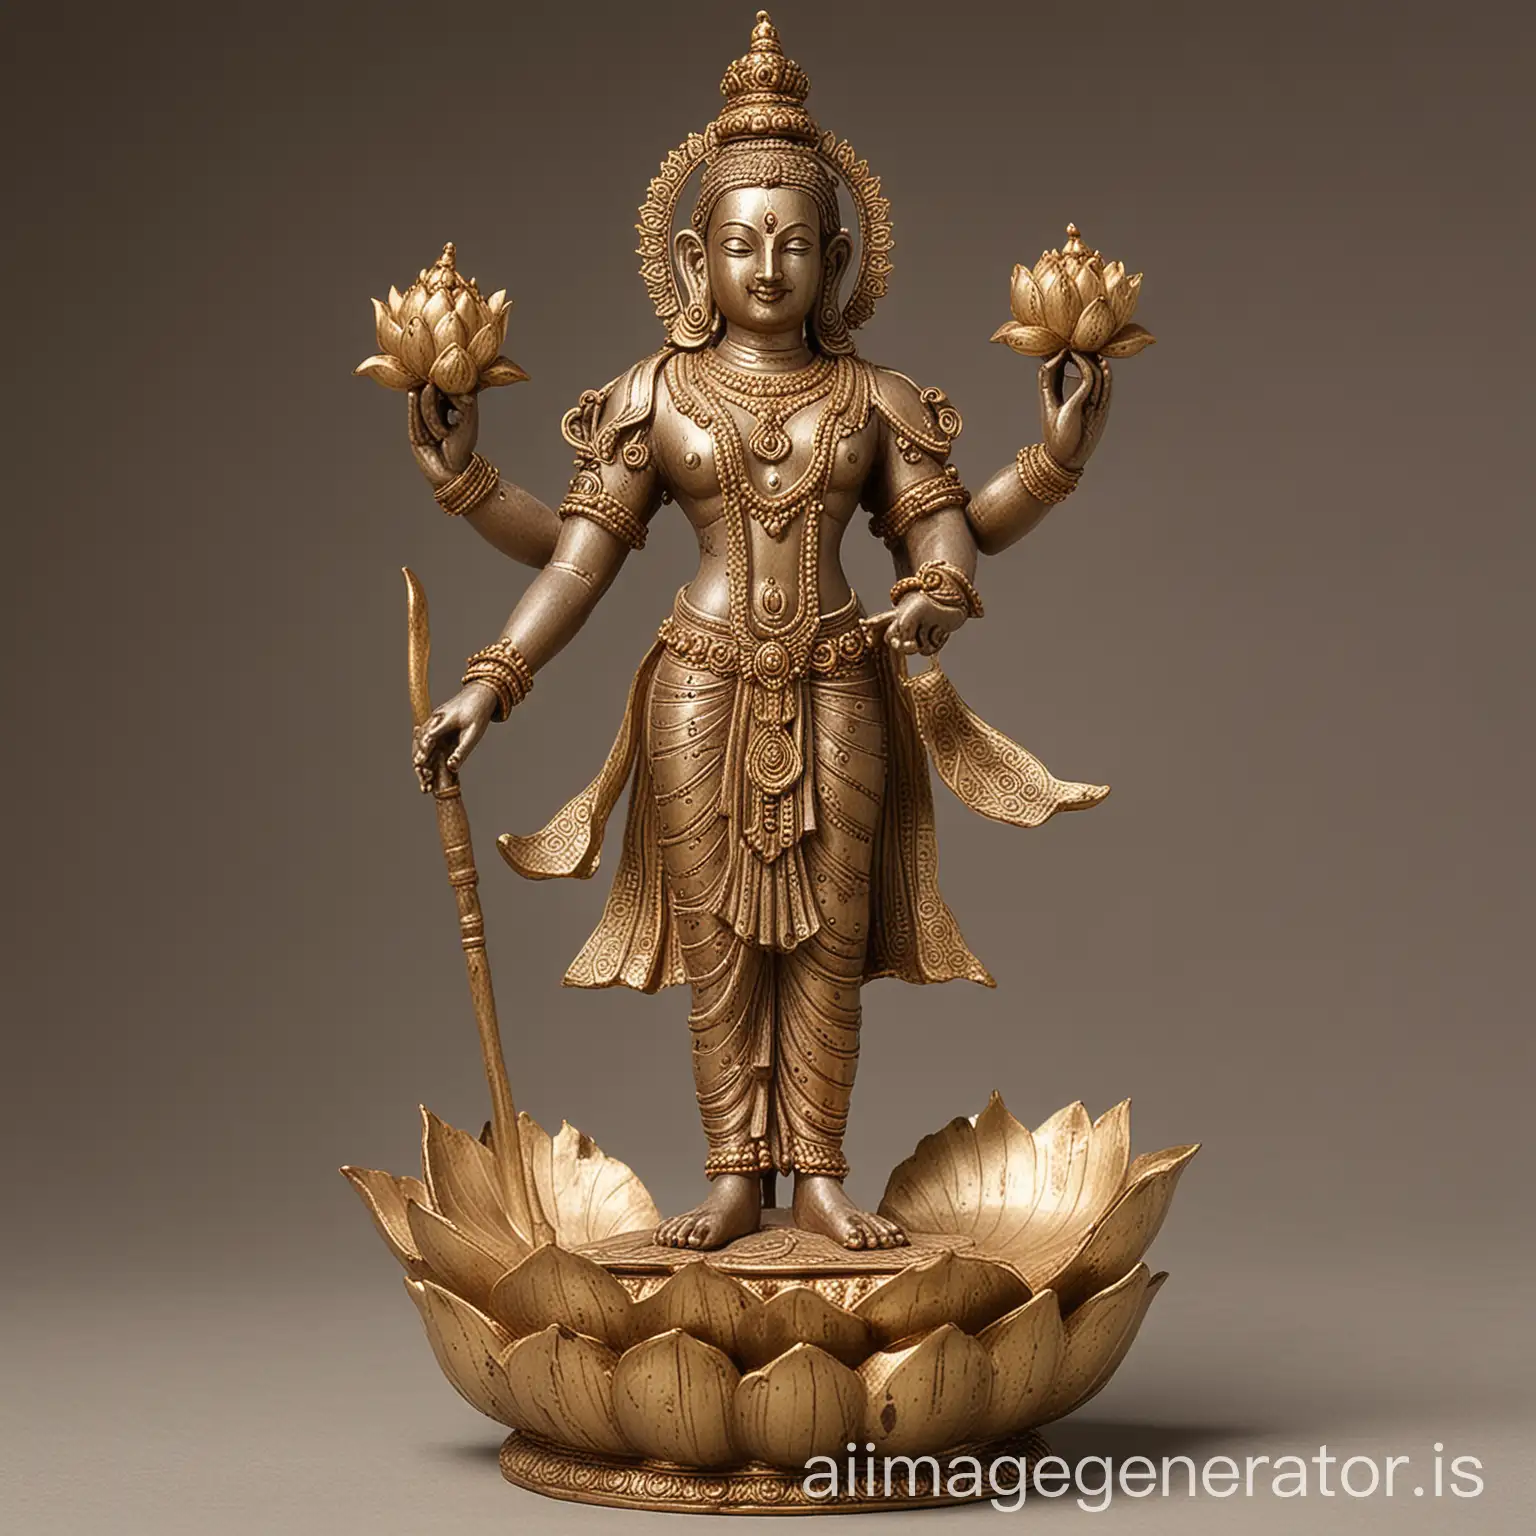 Standing Vishnu deity on lotus